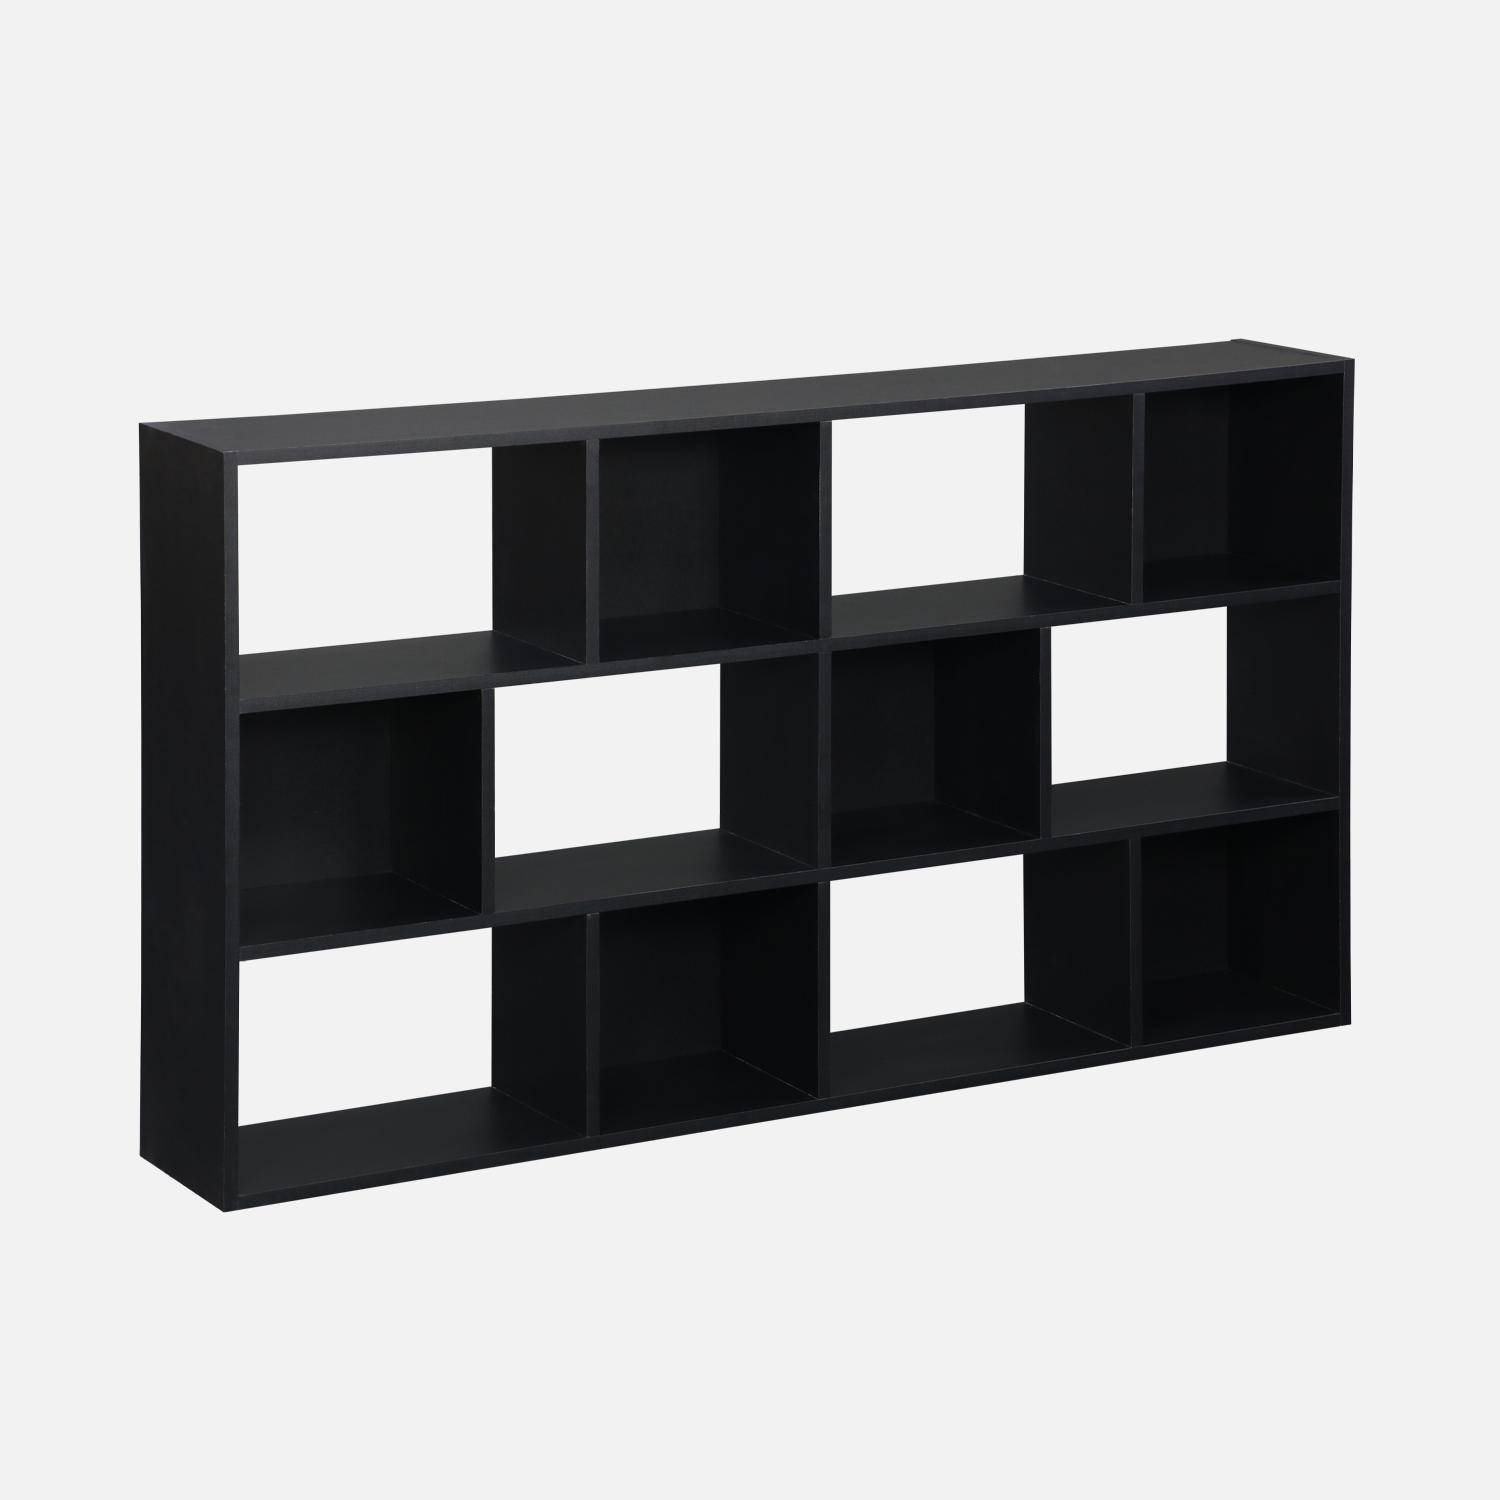 Asymmetrische zwarte design boekenkast, Pieter, 3 planken, 12 opbergvakken Photo1